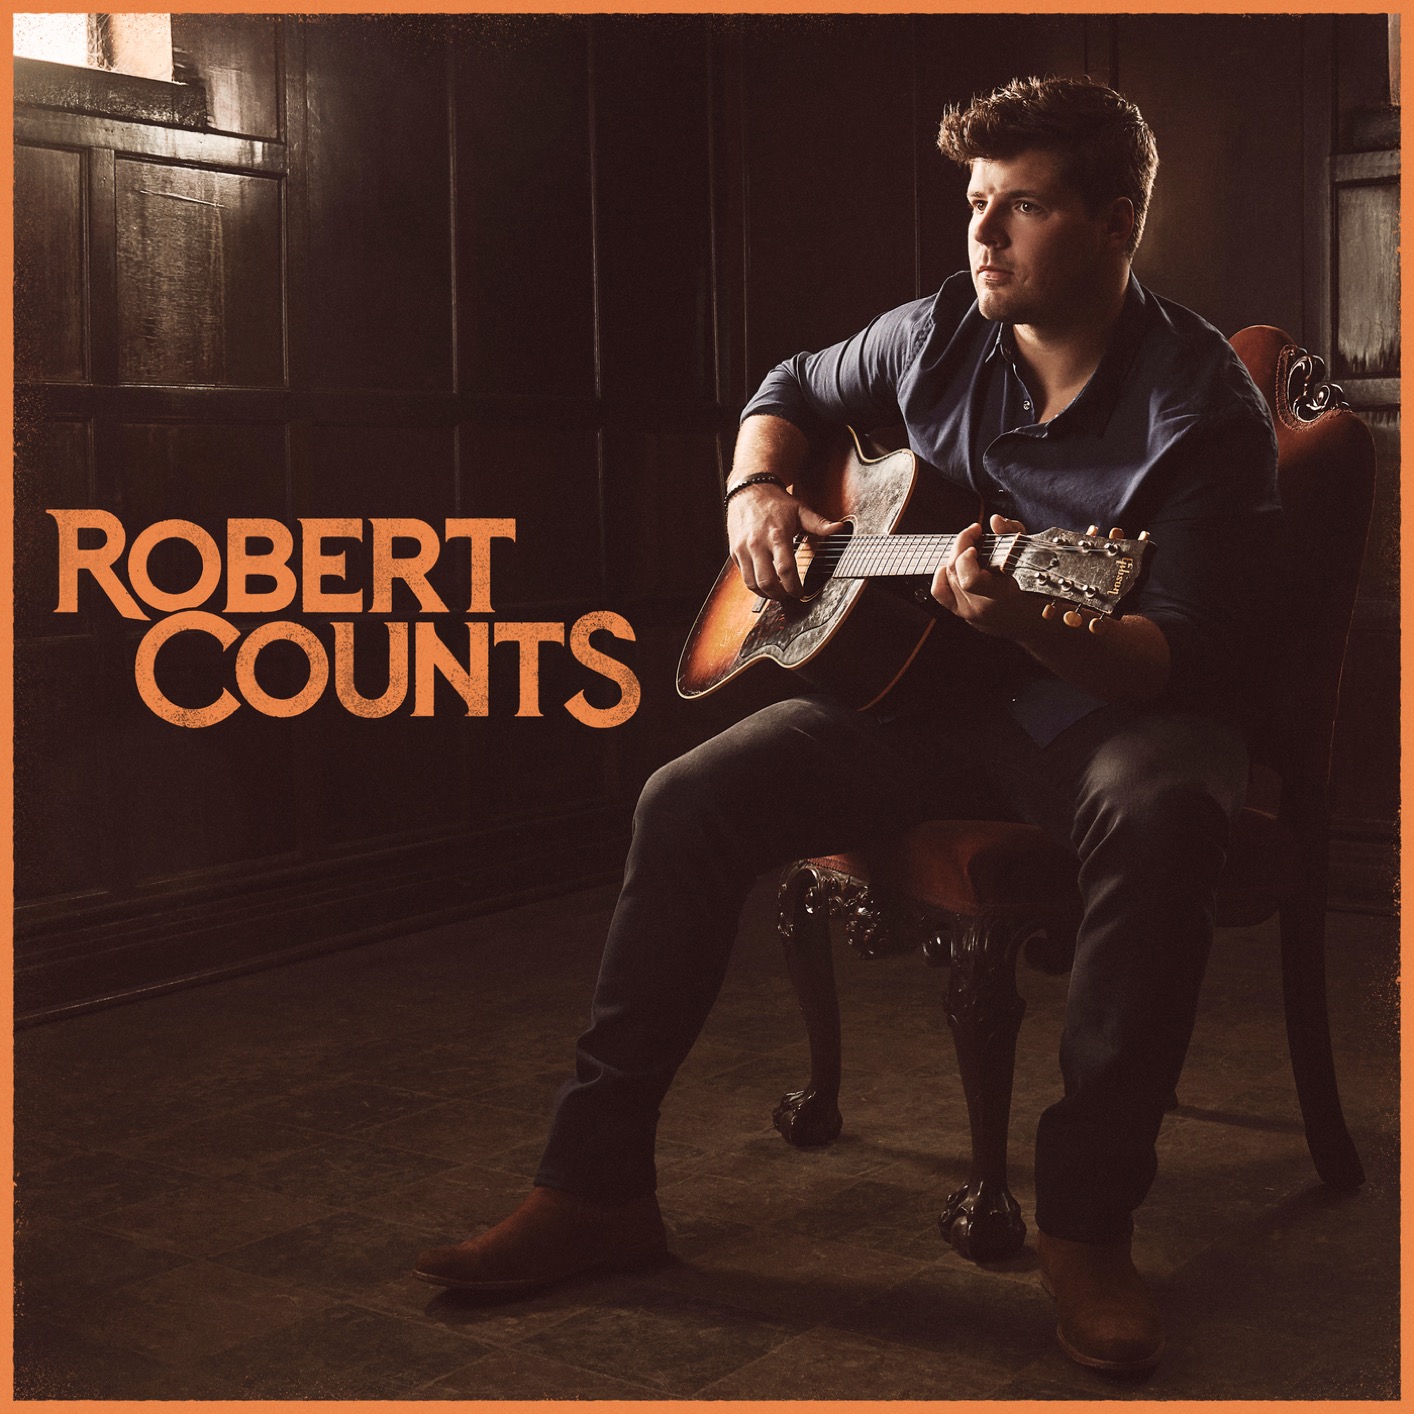 Robert Counts – Robert Counts (EP) (2019) [FLAC 24bit/44,1kHz]